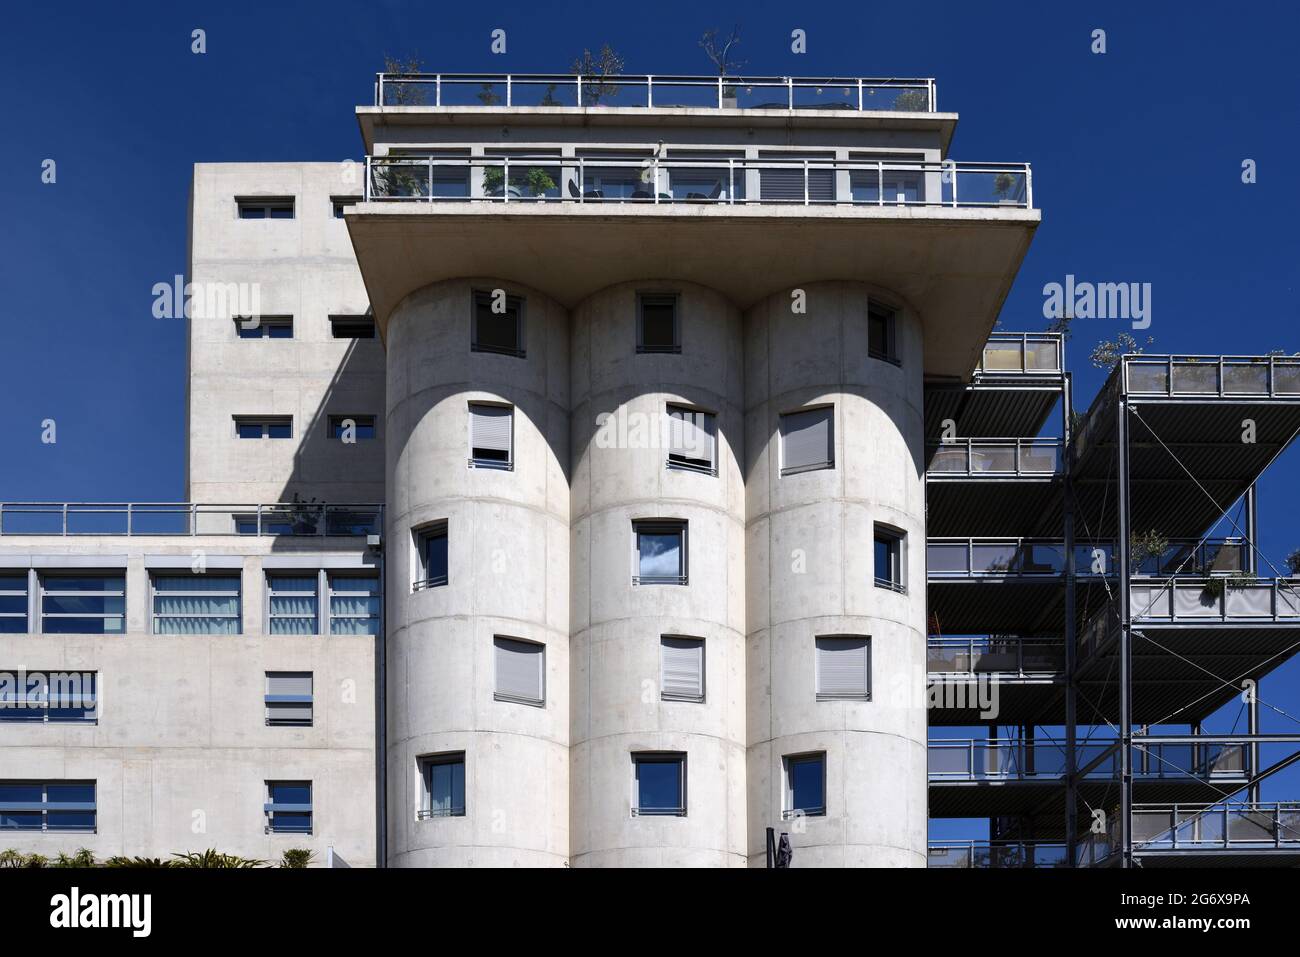 Umbau von Silo oder Gebäudeumbau von Industriesilo aus Beton in gehobene Apartments Aix-en-Provence Frankreich Stockfoto